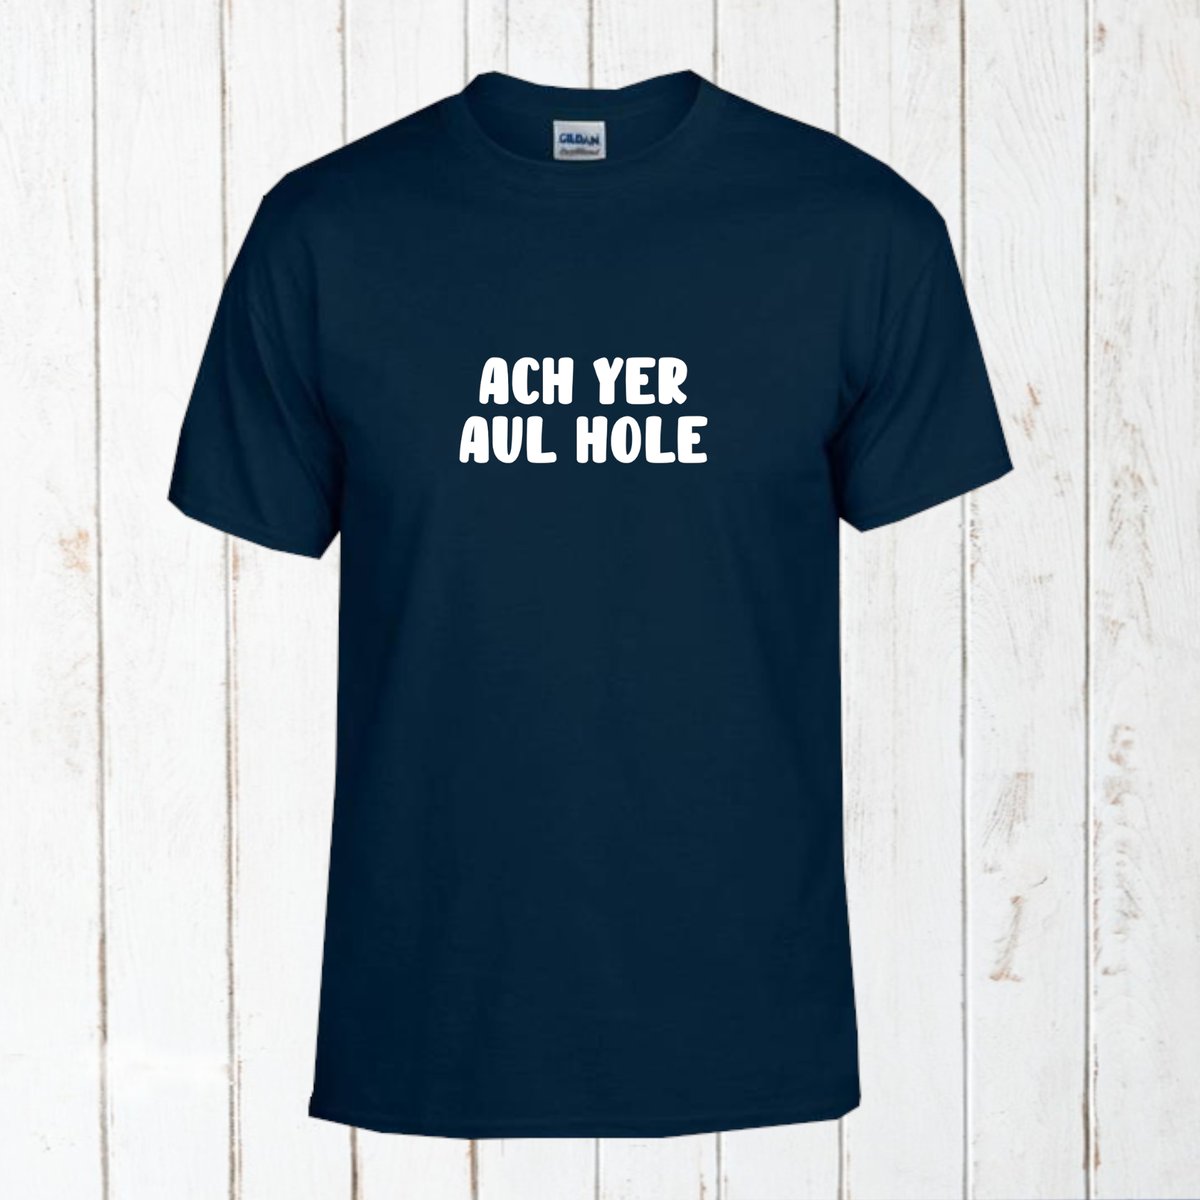 Ach Yer Aul Hole! T-Shirt